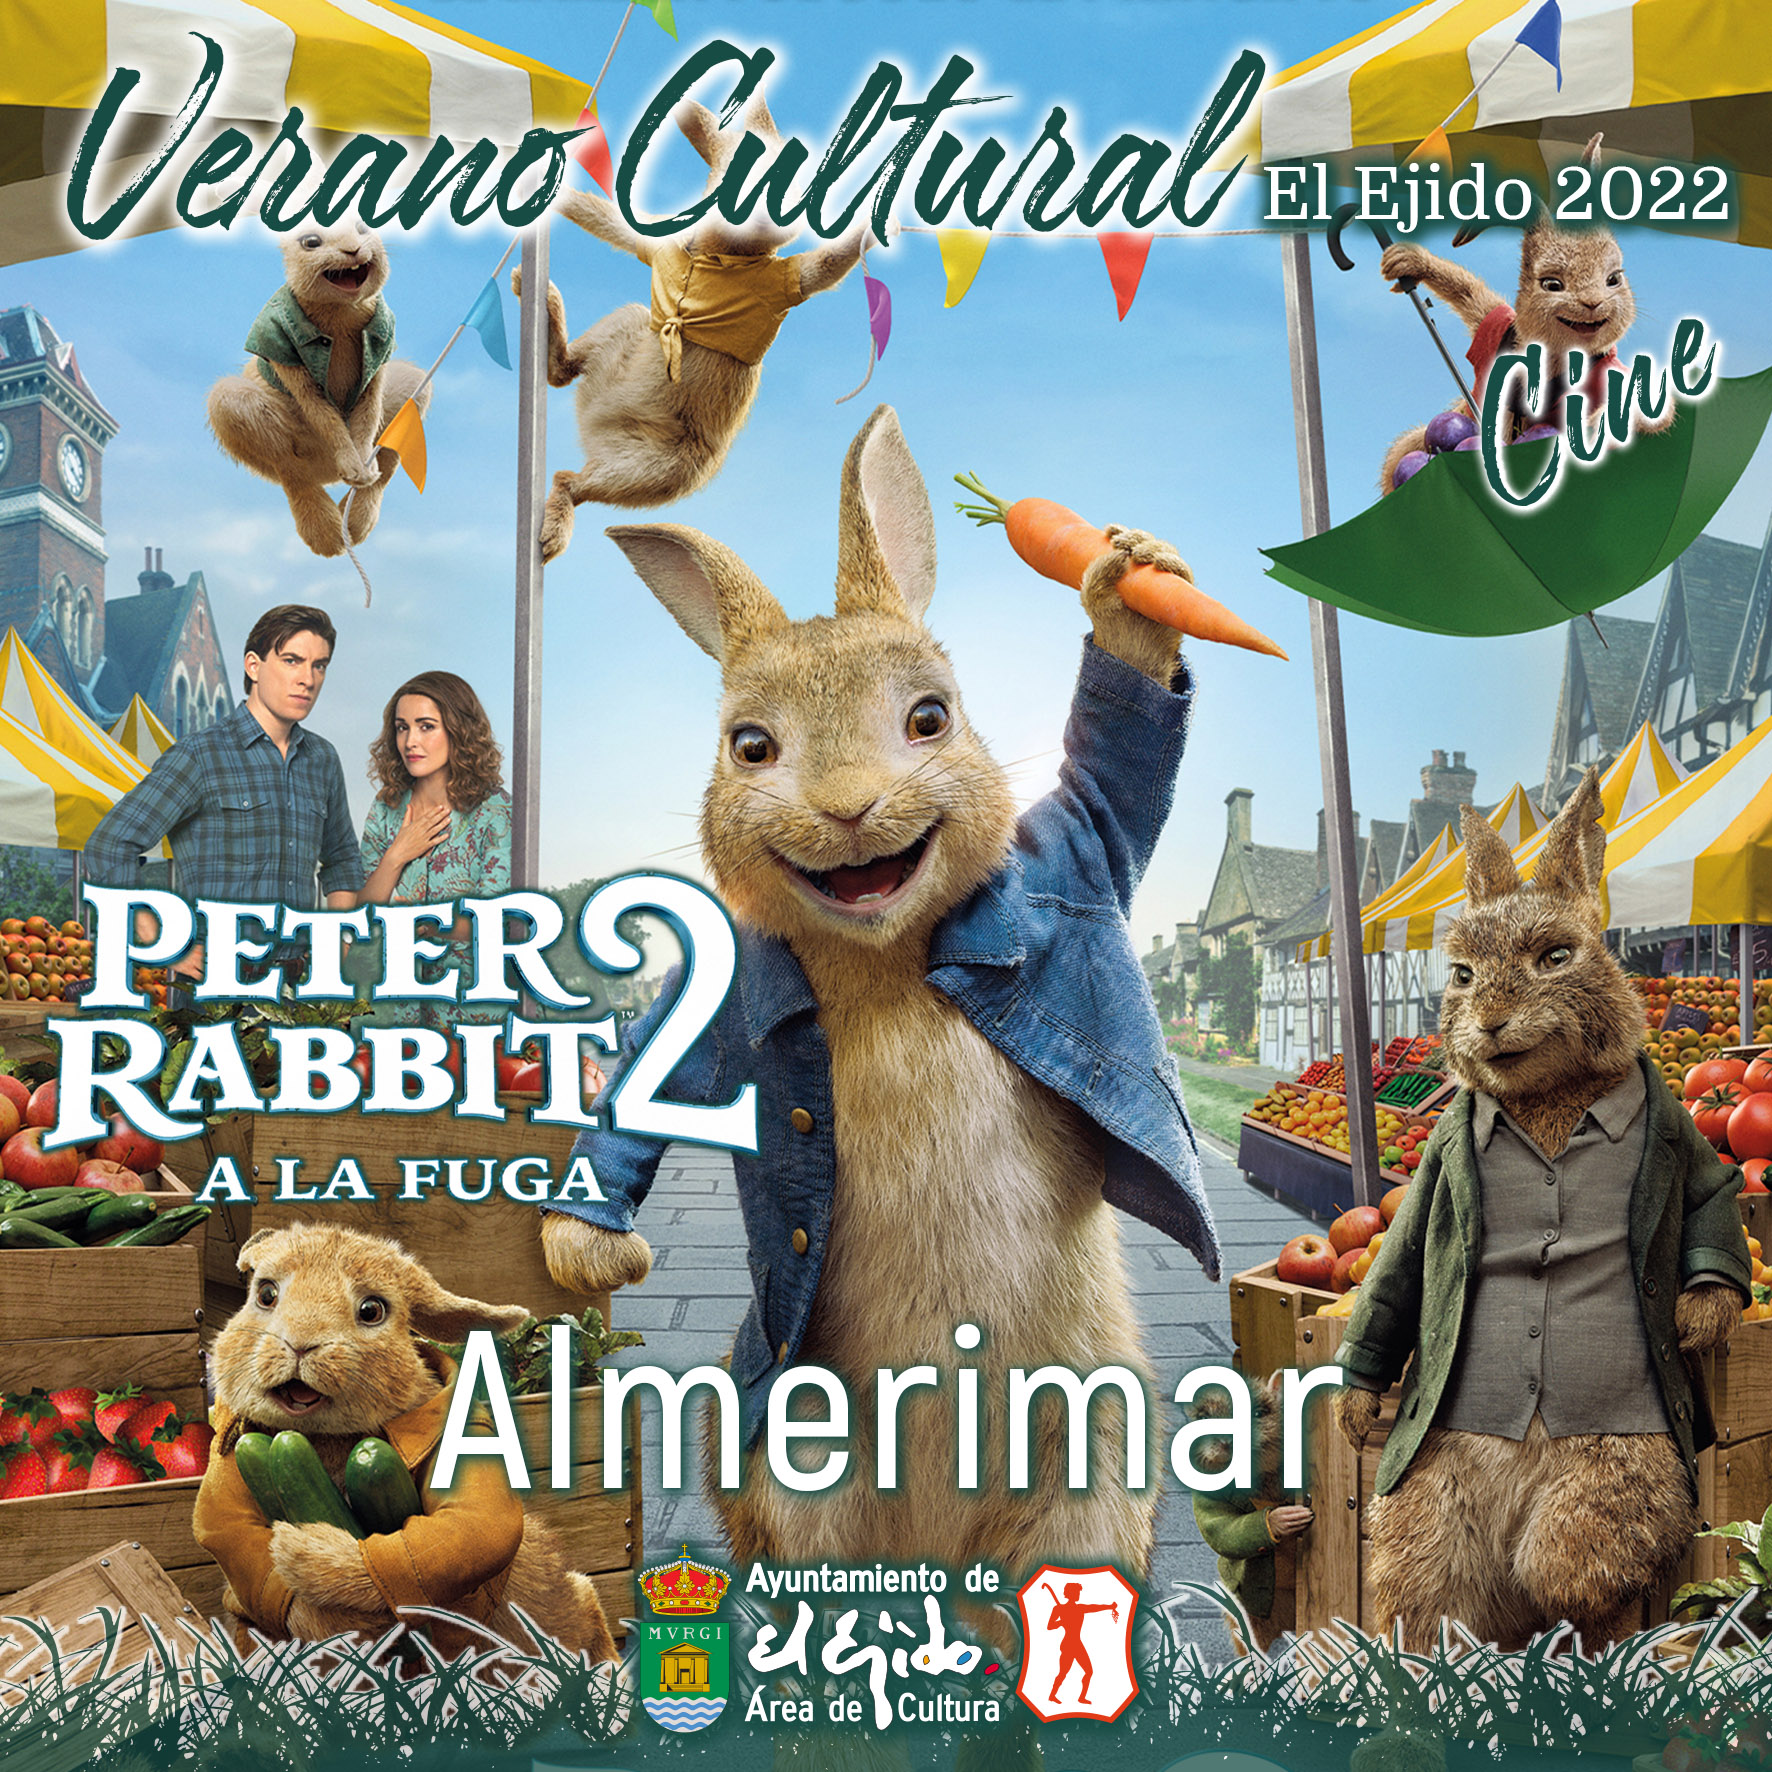 Verano Cultural 2022 de El Ejido – Cine – Almerimar – Peter Rabbit 2 a la fuga